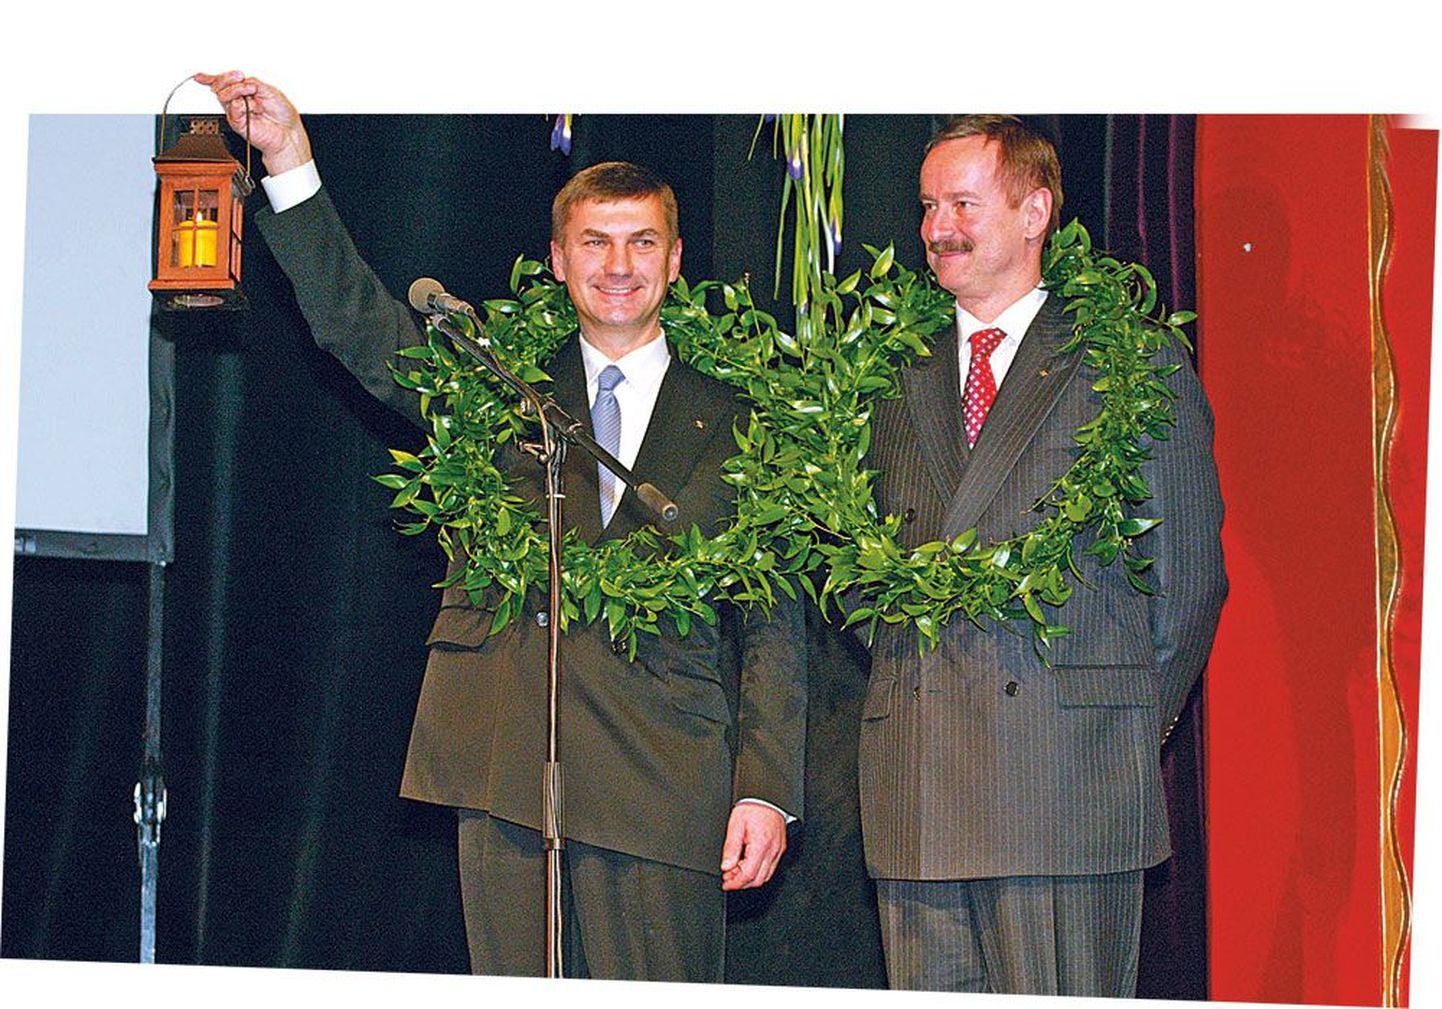 Первая победа Андруса Ансипа на партийном пленуме: 21 ноября 2004 года пленум избрал его новым председателем Партии реформ. Сийм Каллас, занимавший прежде этот пост, был избран реформистами почетным председателем партии.